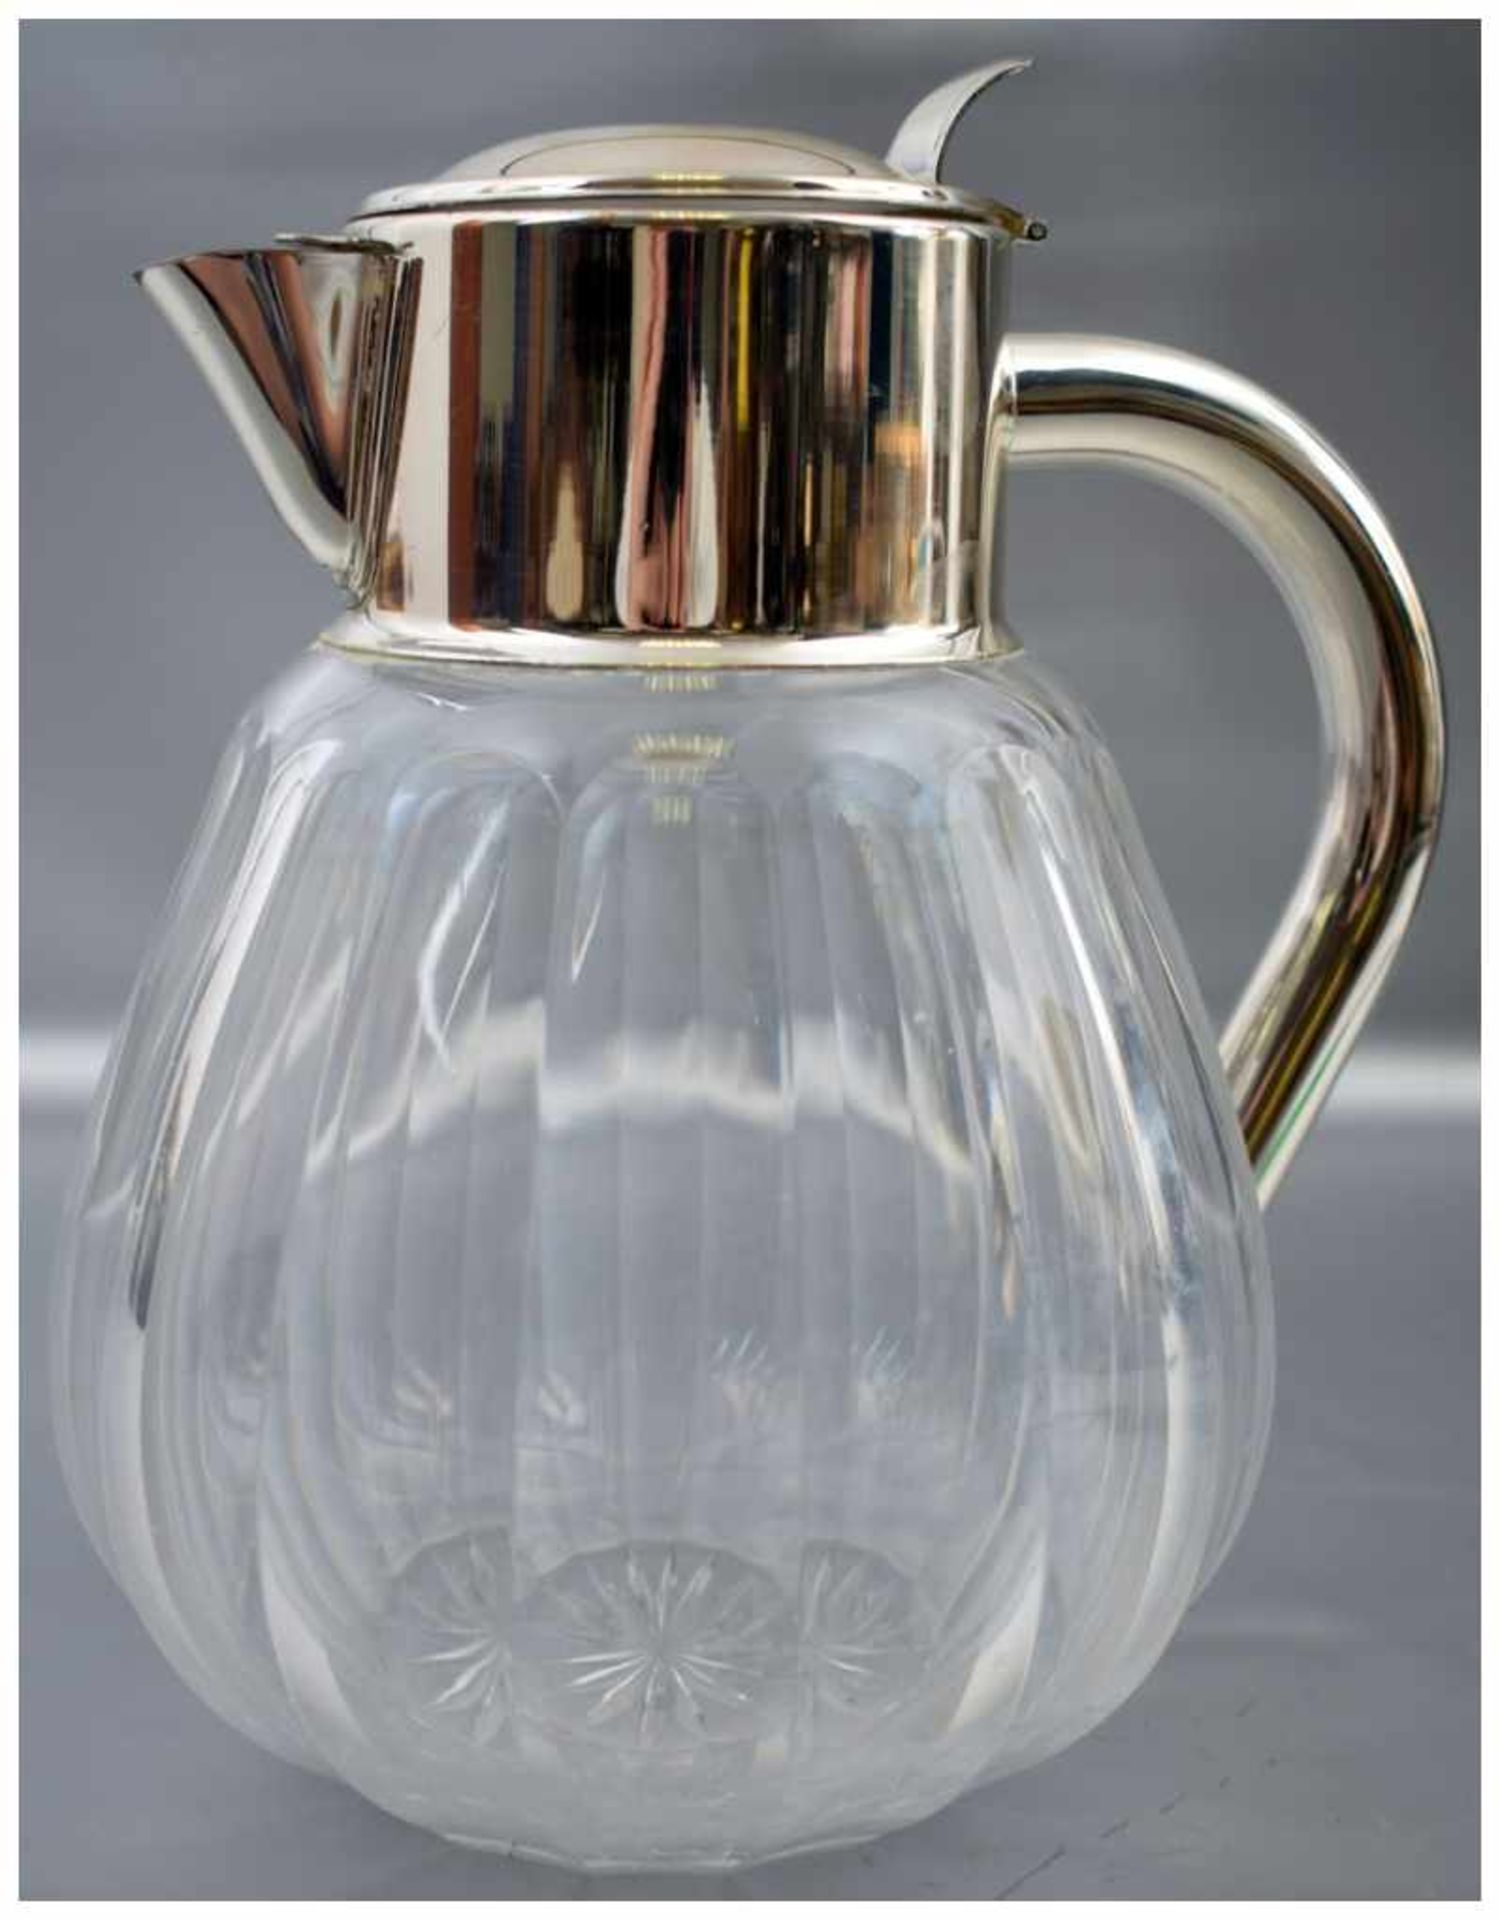 Saftkrug farbl. Glas, geschliffen, Ausgießer und Griff Weißmetall, H 25 cm